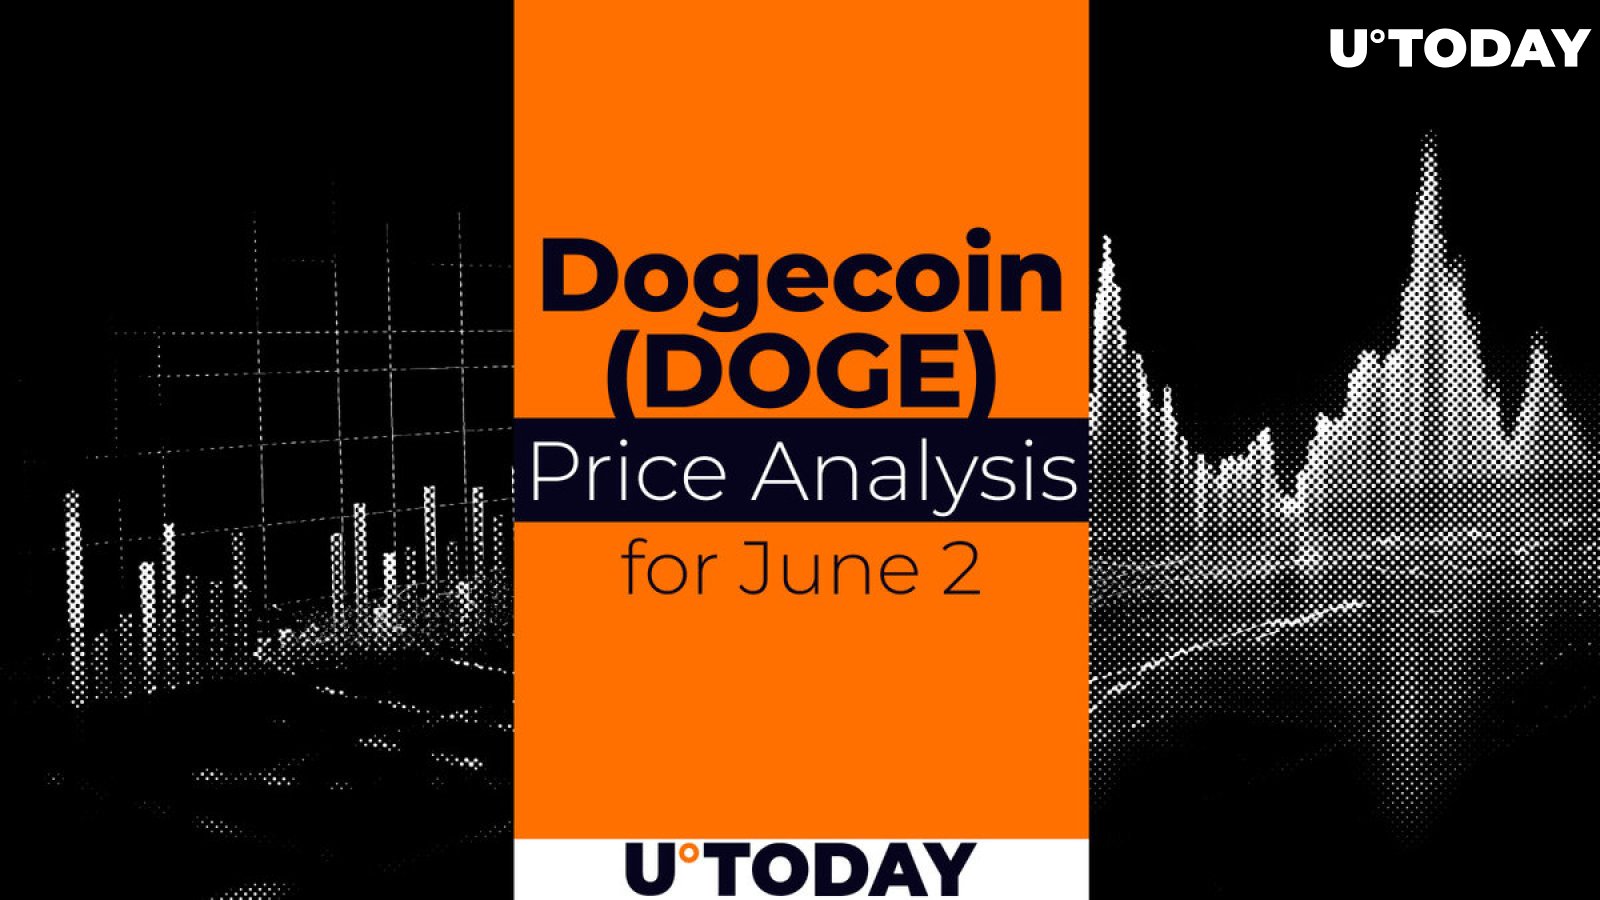 DOGE Price Prediction for June 2